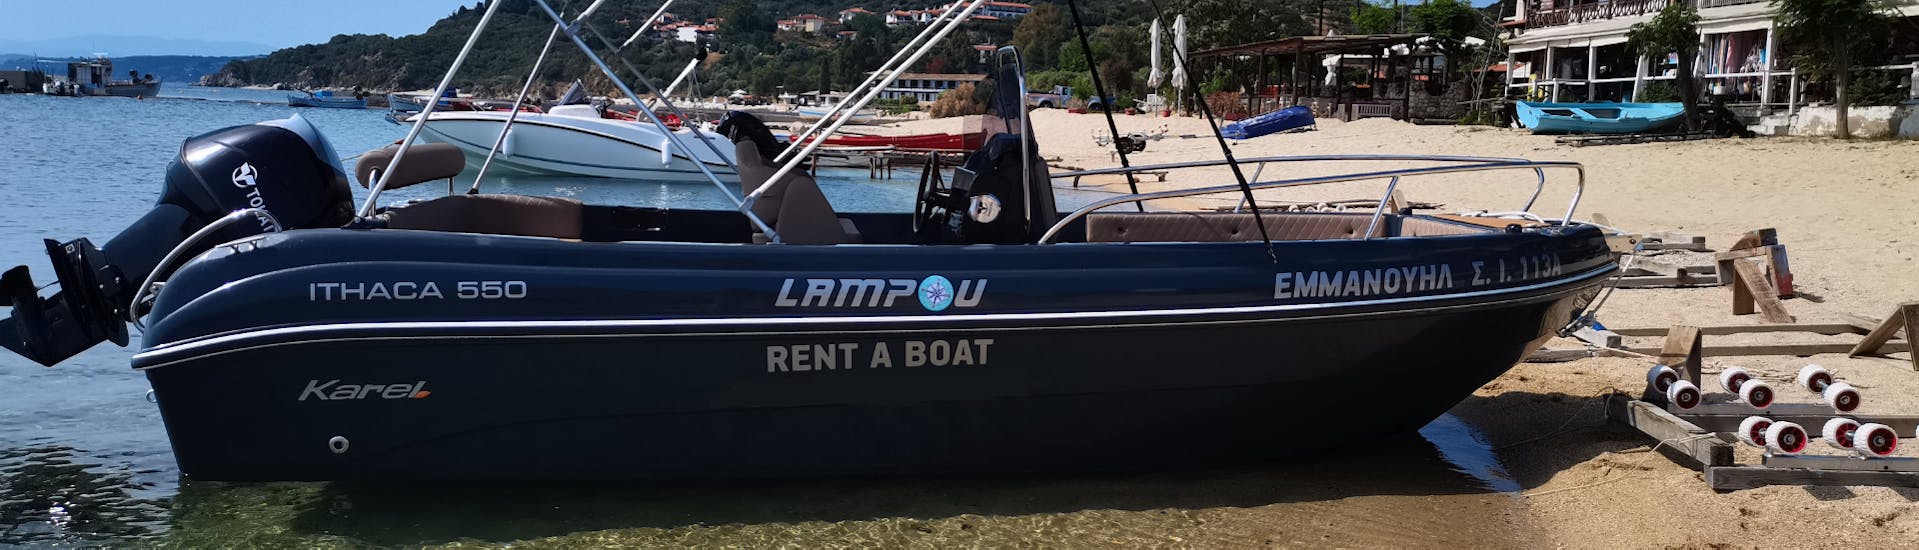 La nostra barca da otto persone vi aspetta per il Noleggio barca a Ouranoupoli (fino a 8 persone) senza patente con Rent a Boat Lampou Ouranoupoli.